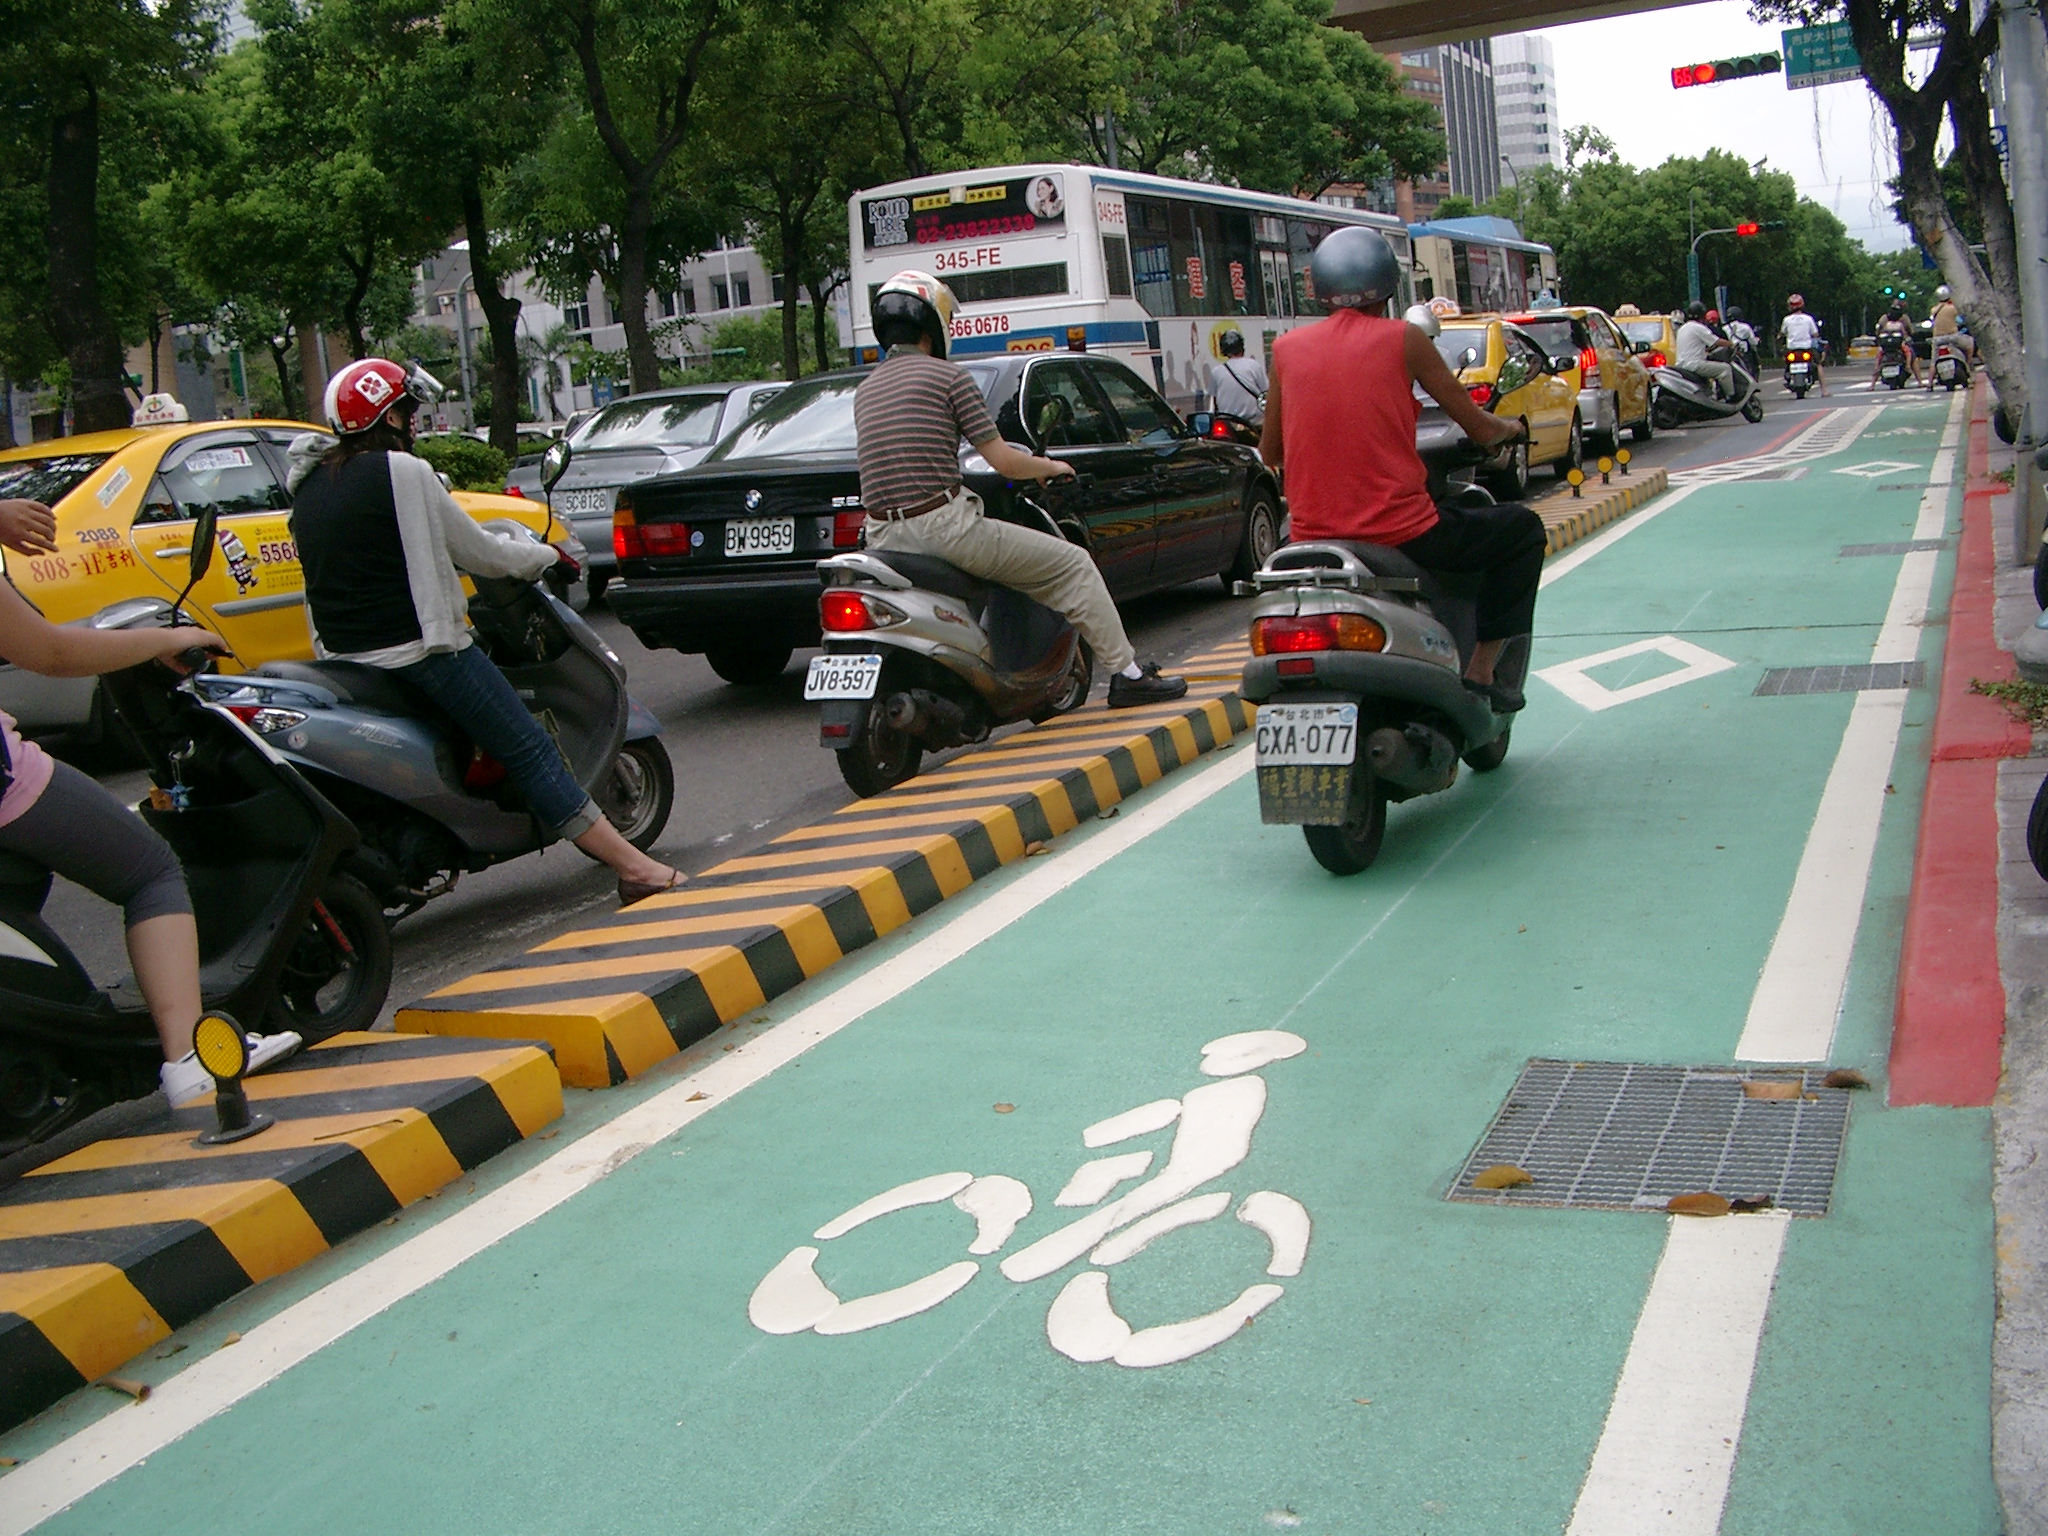 Ein Parade-Radweg, sogar mit Mäuerchen von der Straße abgegrenzt. Trotzdem eine prima Abkürzung für ungeduldige Scooter-Fahrer. (Taipeh, Dunhua N. Rd.)